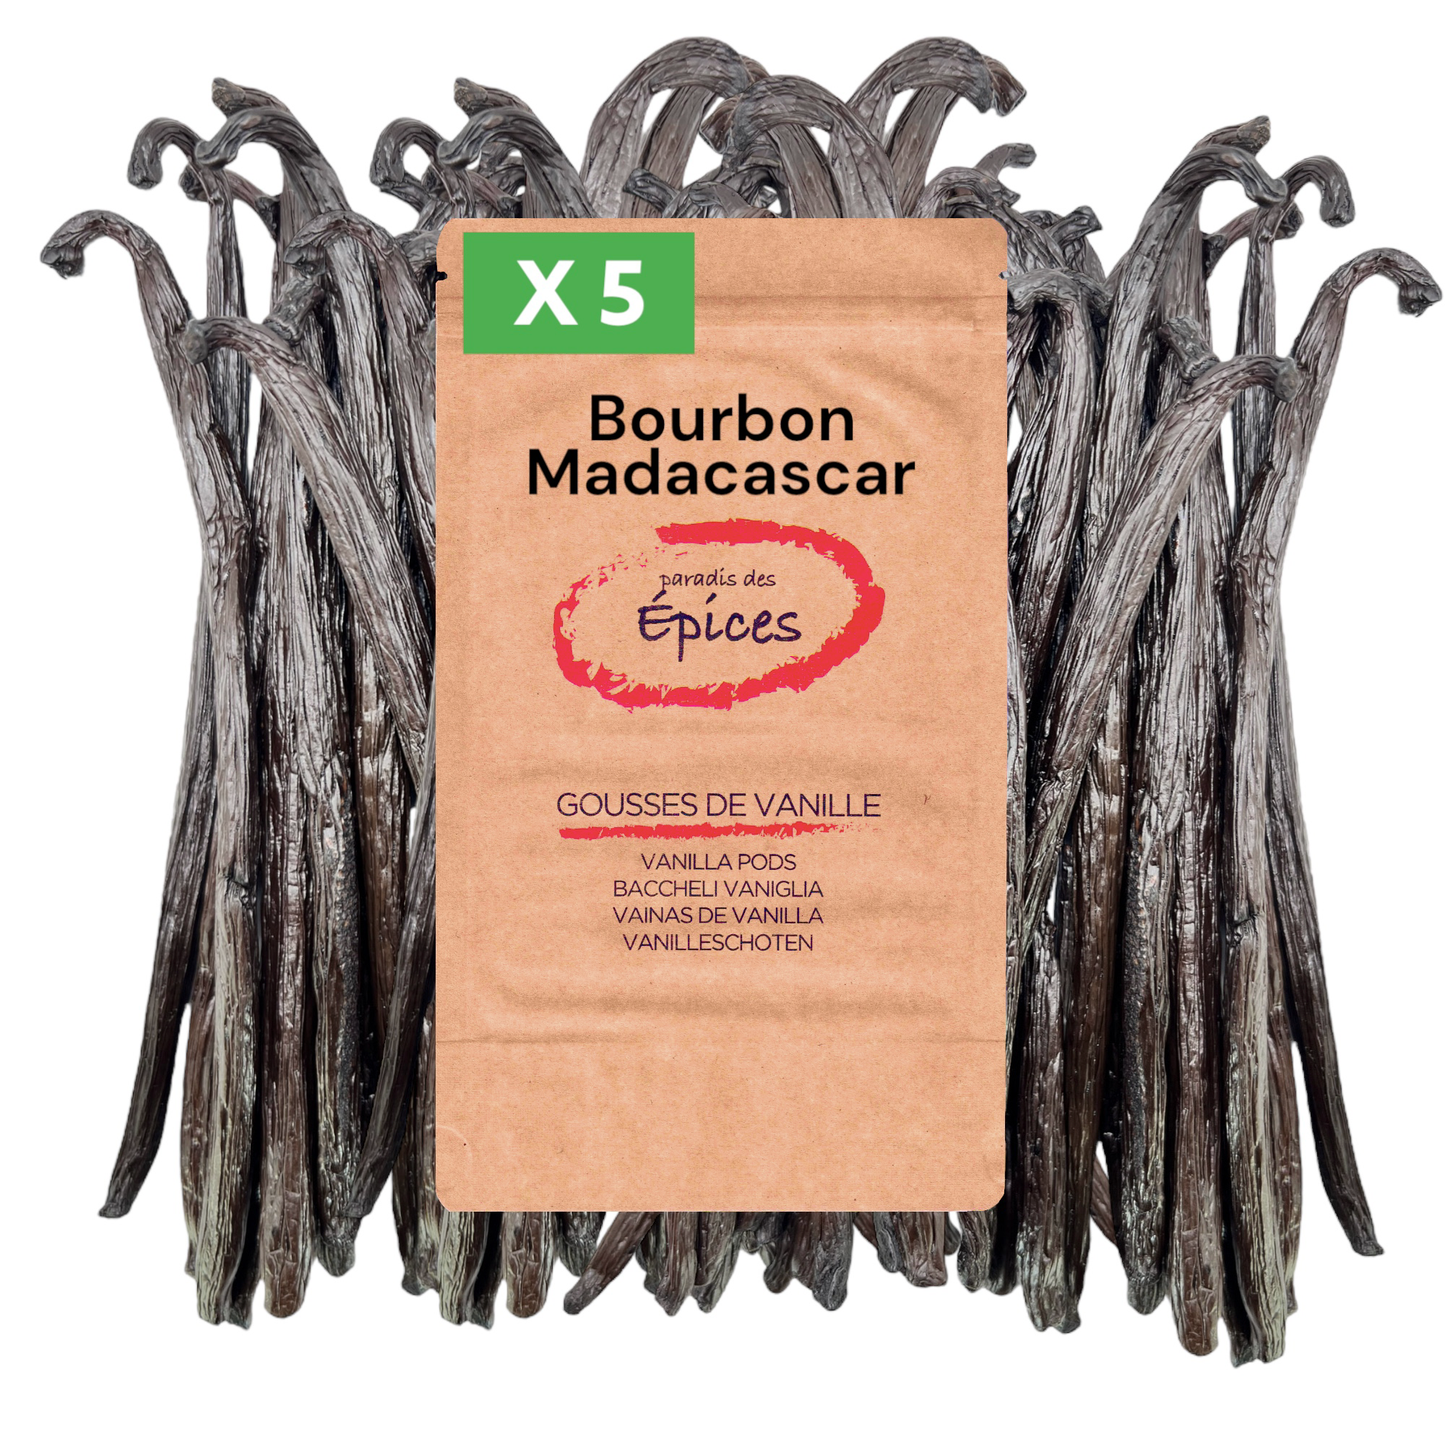 5 Gousses de Vanille noire de Madagascar